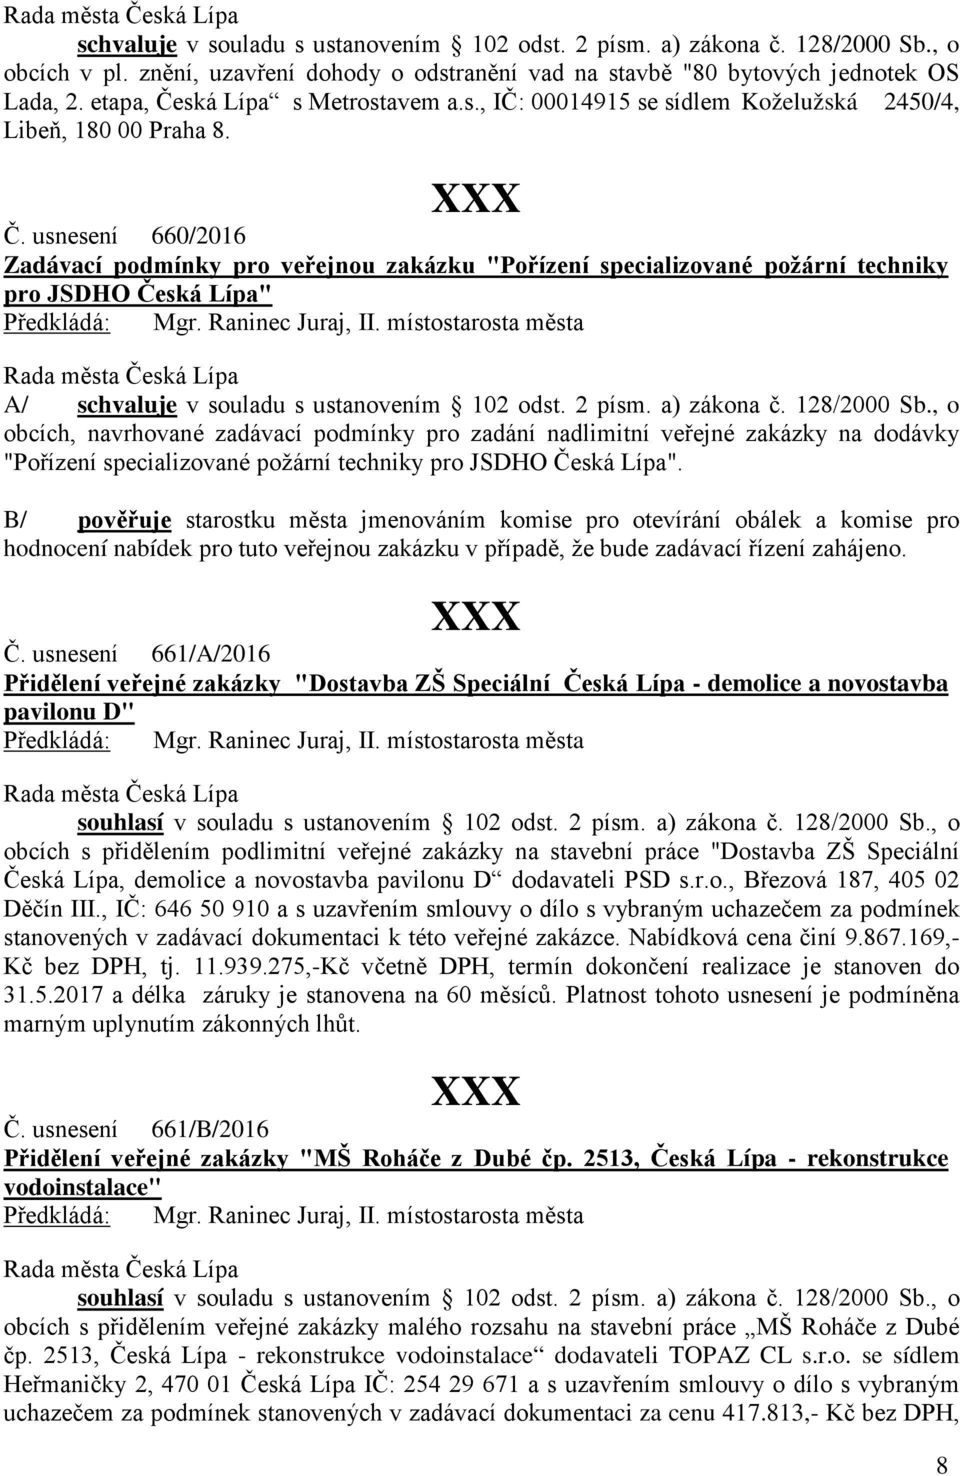 2 písm. a) zákona č. 128/2000 Sb., o obcích, navrhované zadávací podmínky pro zadání nadlimitní veřejné zakázky na dodávky "Pořízení specializované požární techniky pro JSDHO Česká Lípa".